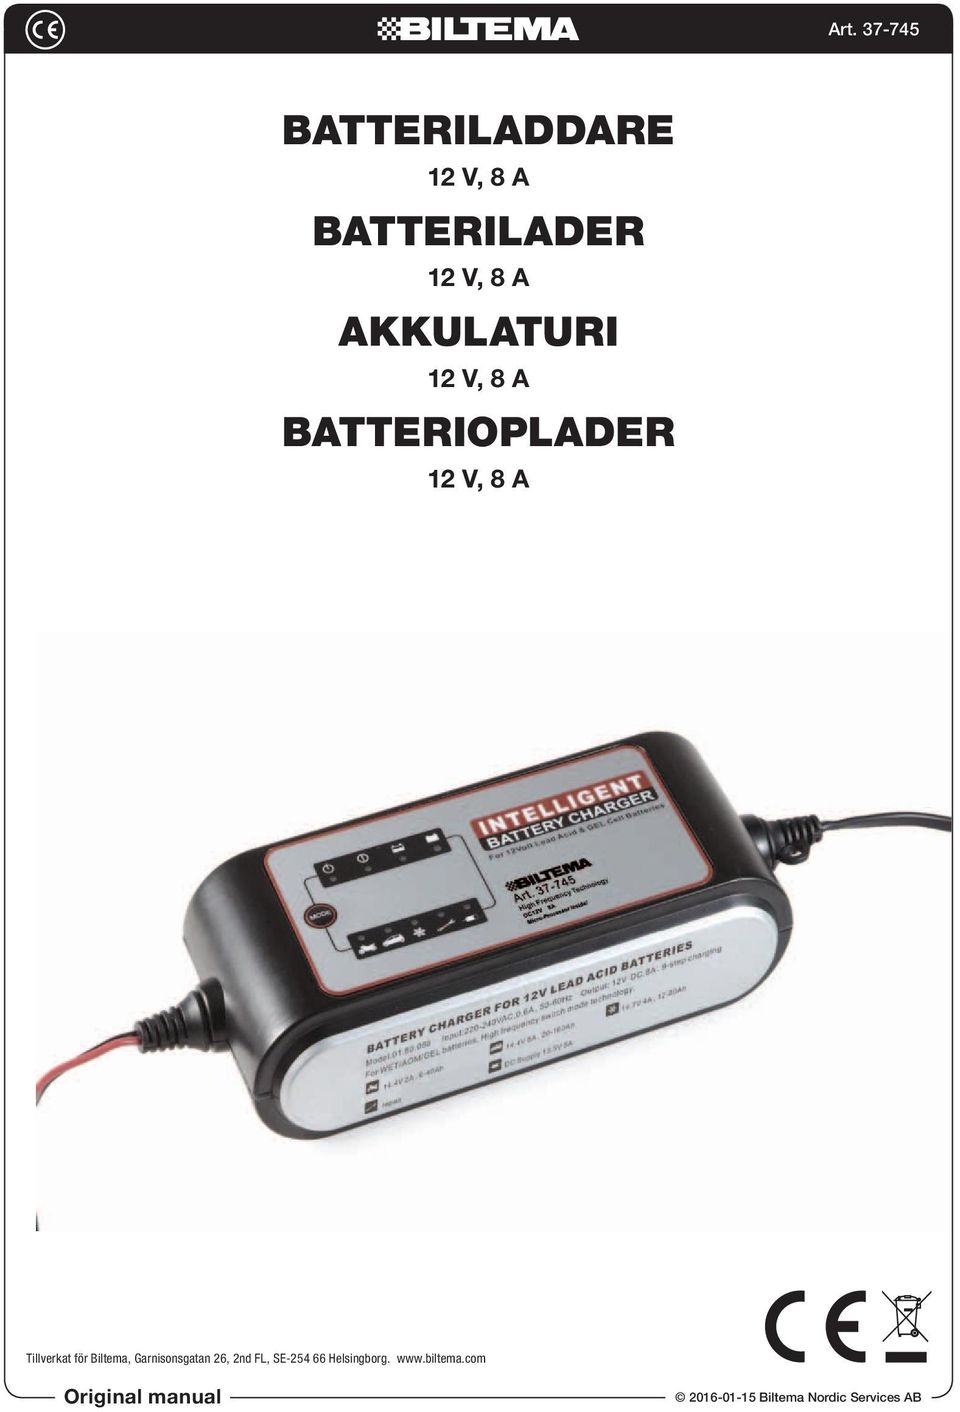 BATTERILADDARE BATTERILADER AKKULATURI BATTERIOPLADER - PDF Free Download